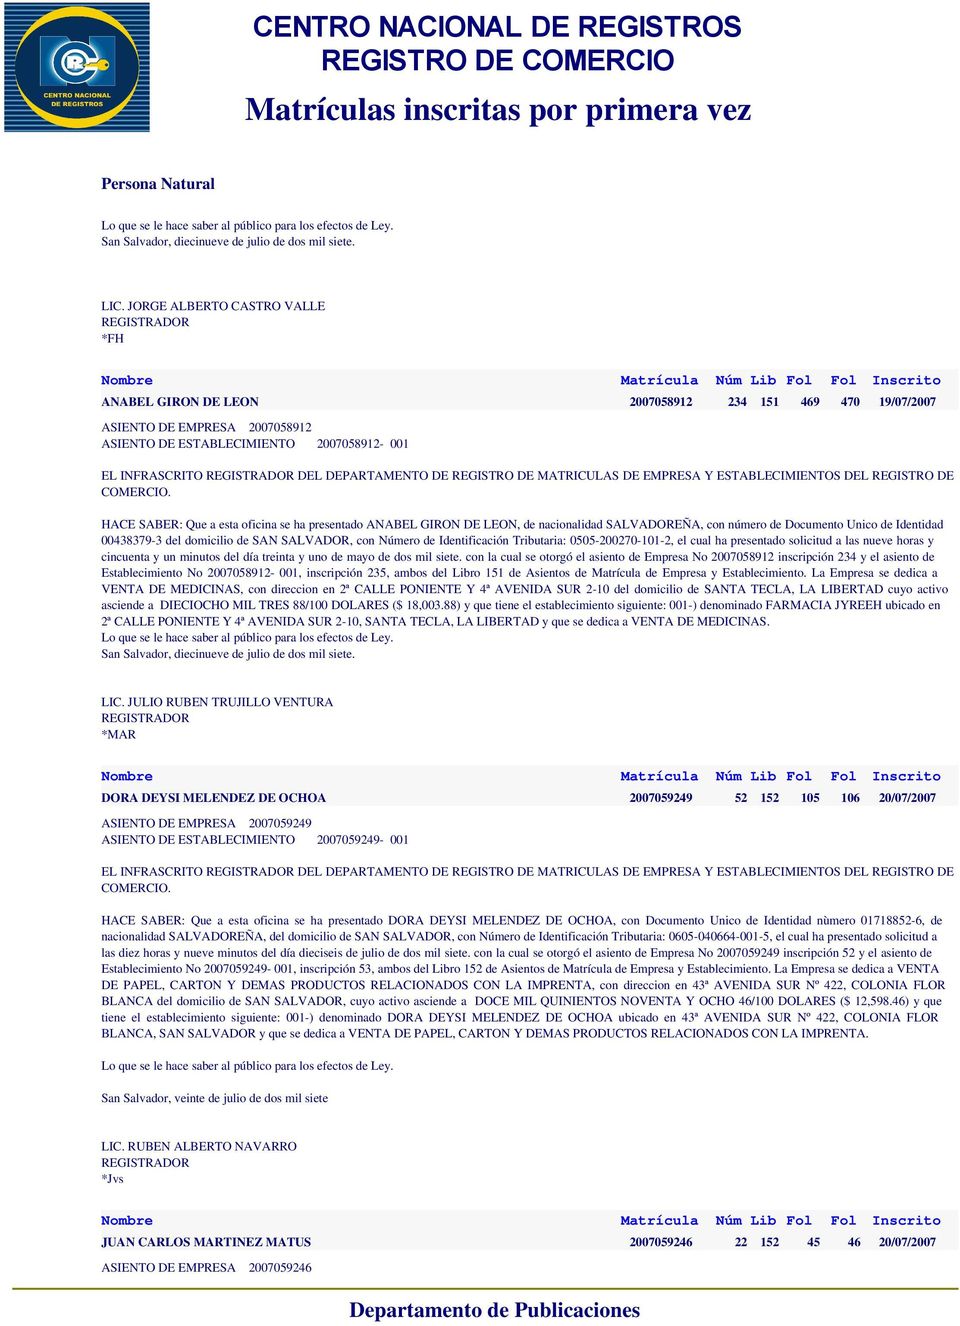 GIRON DE LEON, de nacionalidad SALVADOREÑA, con número de Documento Unico de Identidad 00438379-3 del domicilio de SAN SALVADOR, con Número de Identificación Tributaria: 0505-200270-101-2, el cual ha